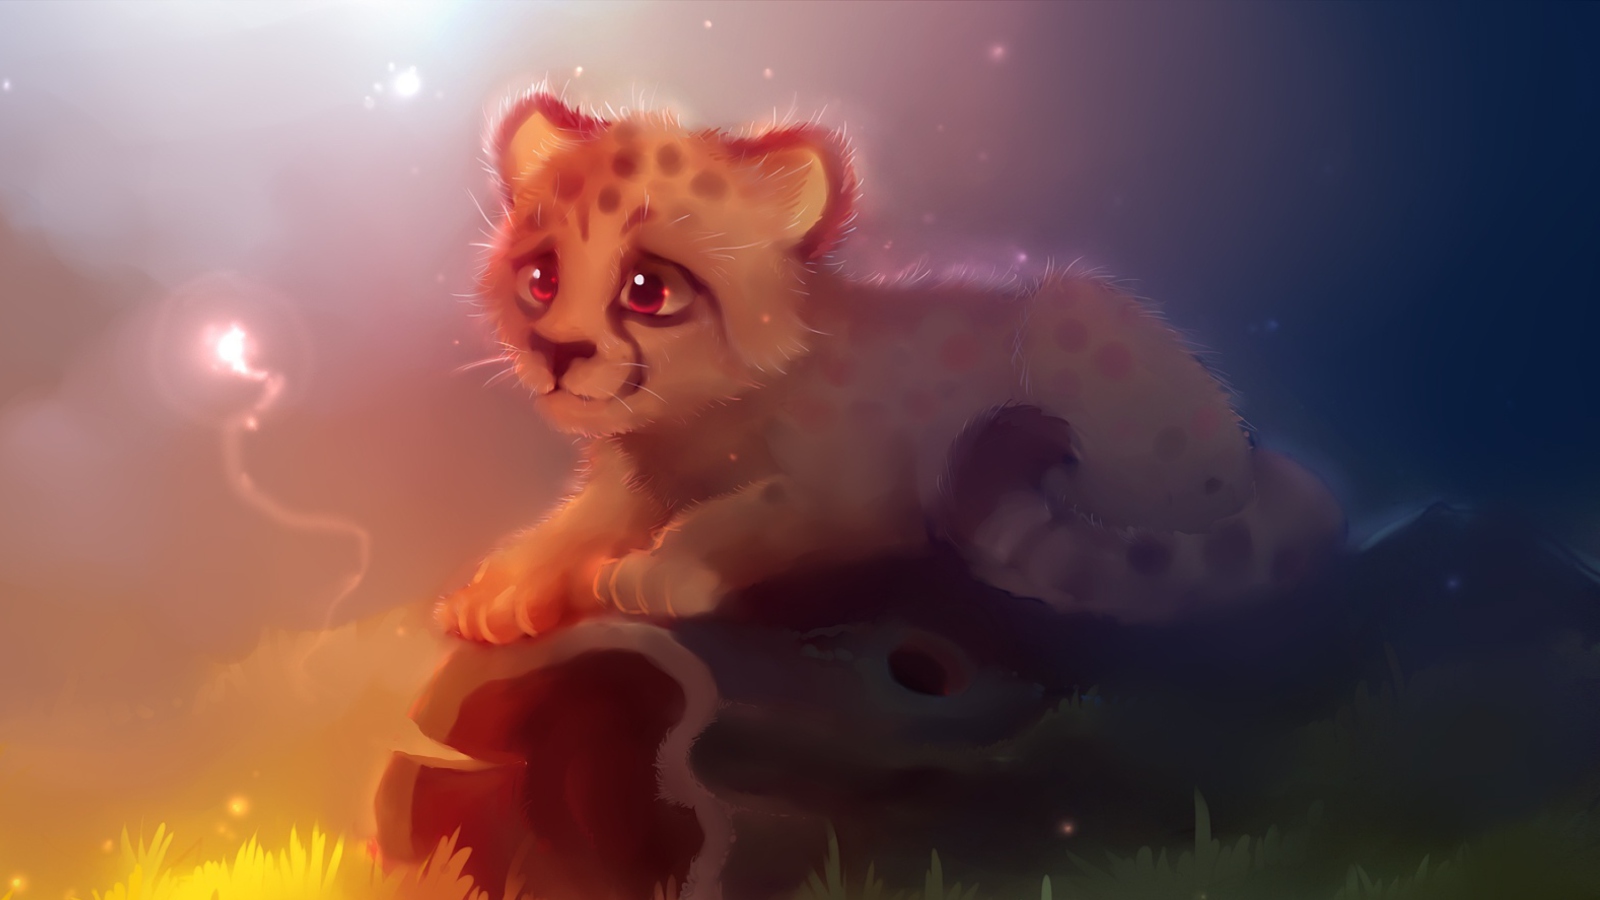 Das Cute Cheetah Painting Wallpaper 1600x900